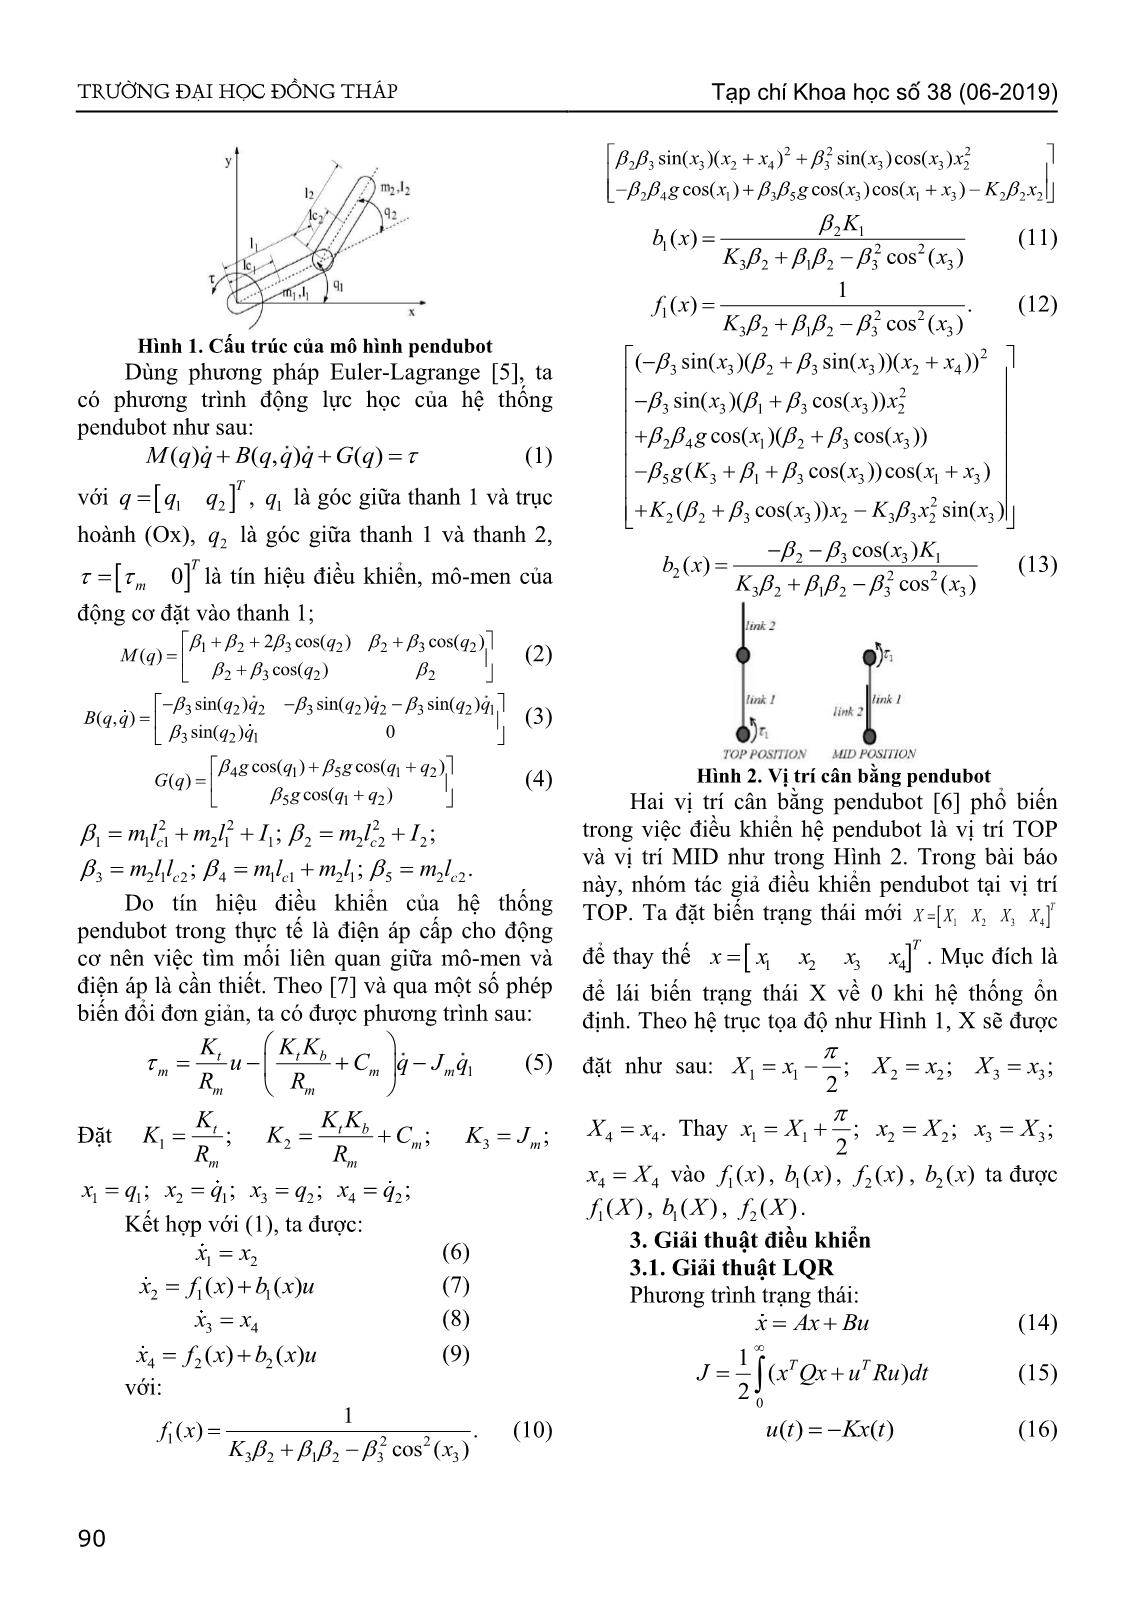 Điều khiển hệ pendubot sử dụng dạng toàn phương tuyến tính dựa trên logic mờ trang 2